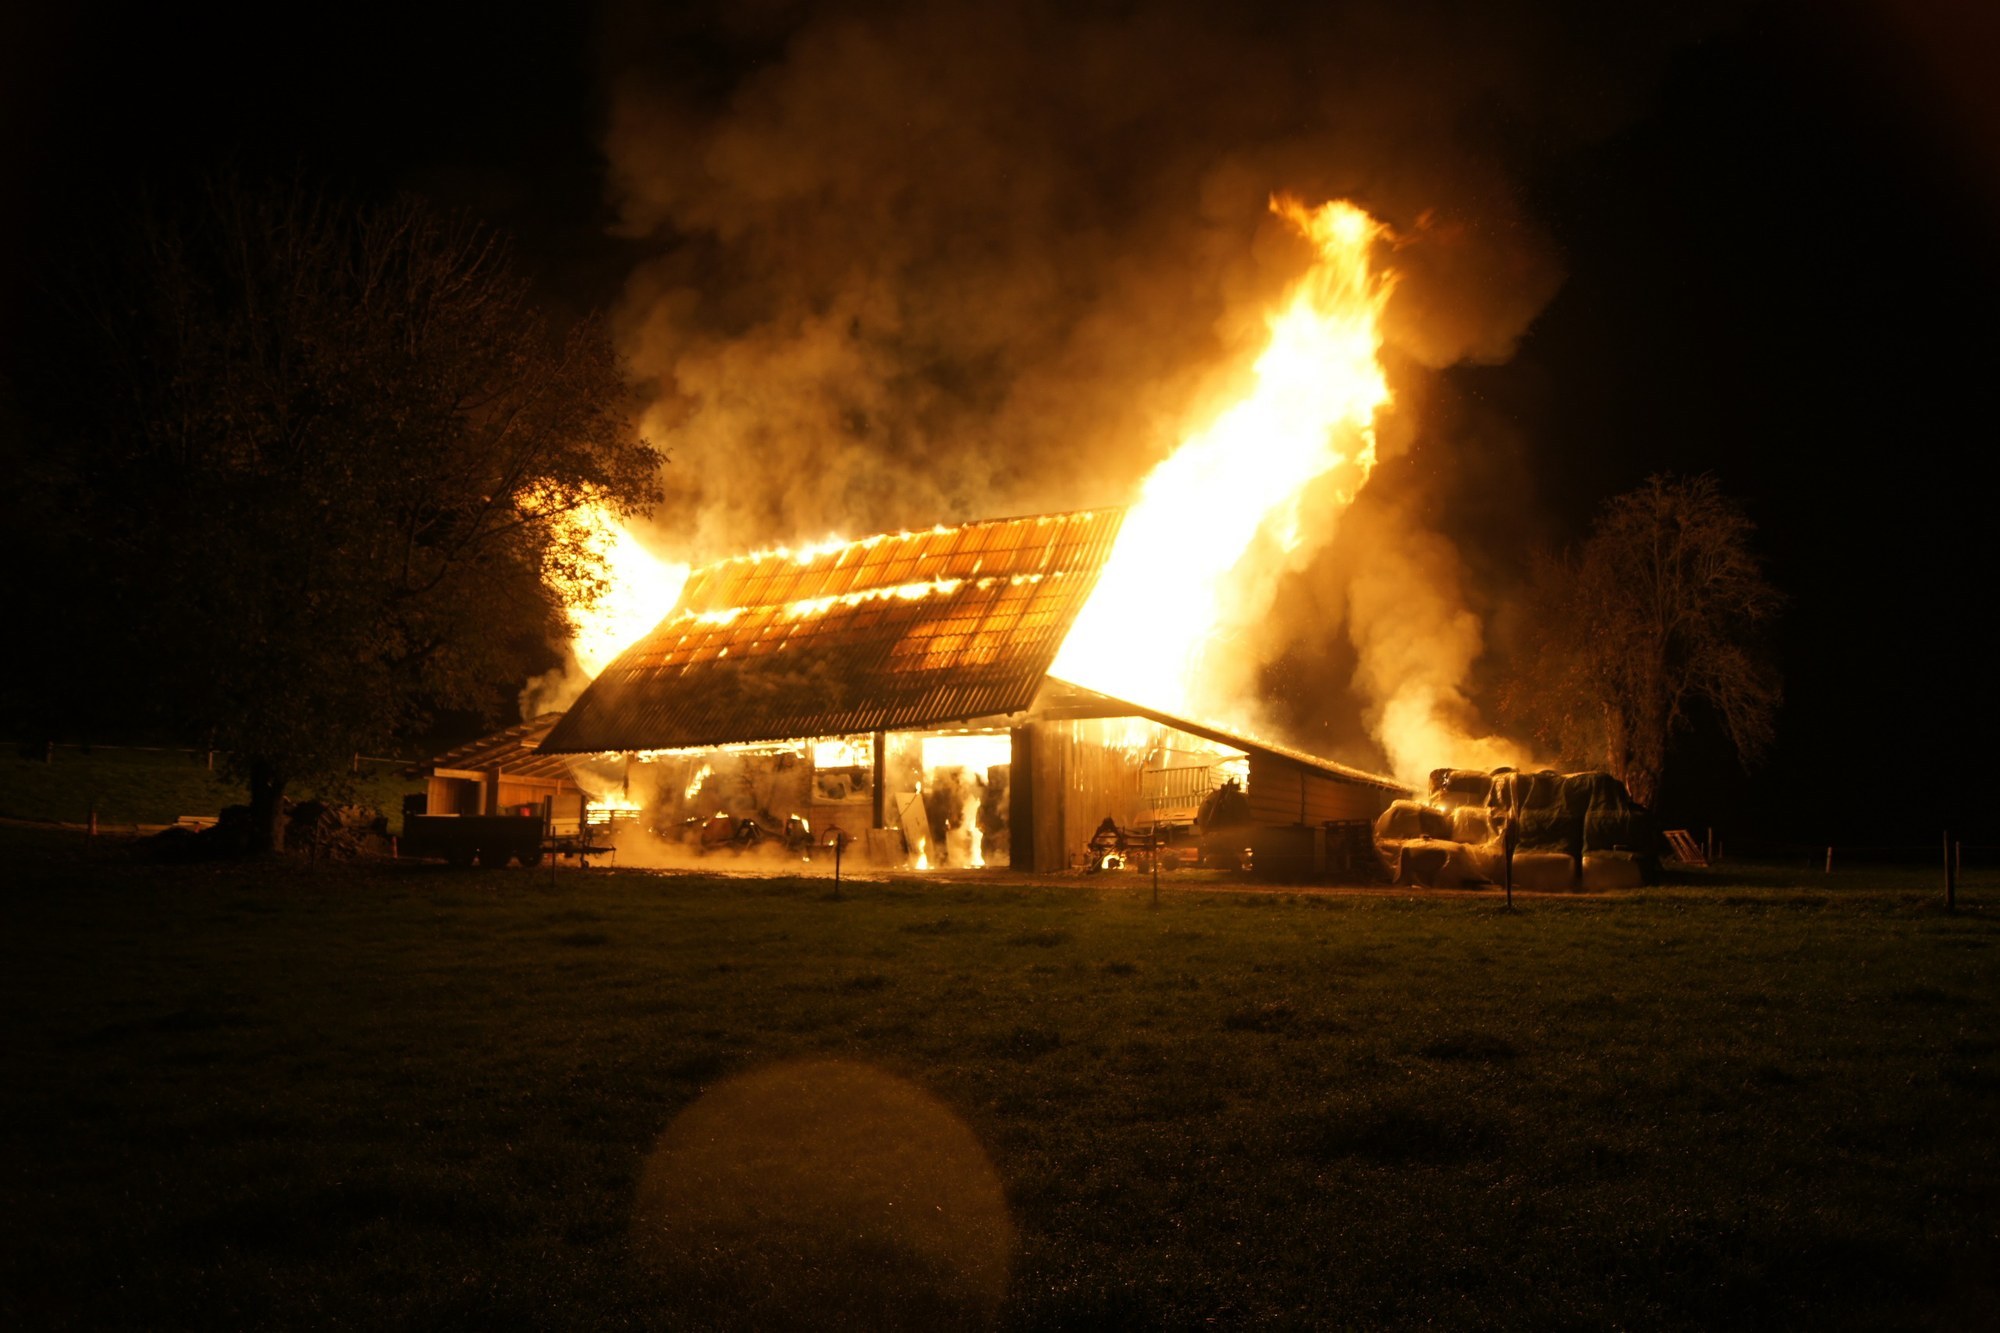 Un incendie survenu à Domdidier (FR) avait causé la mort de plusieurs bovins.